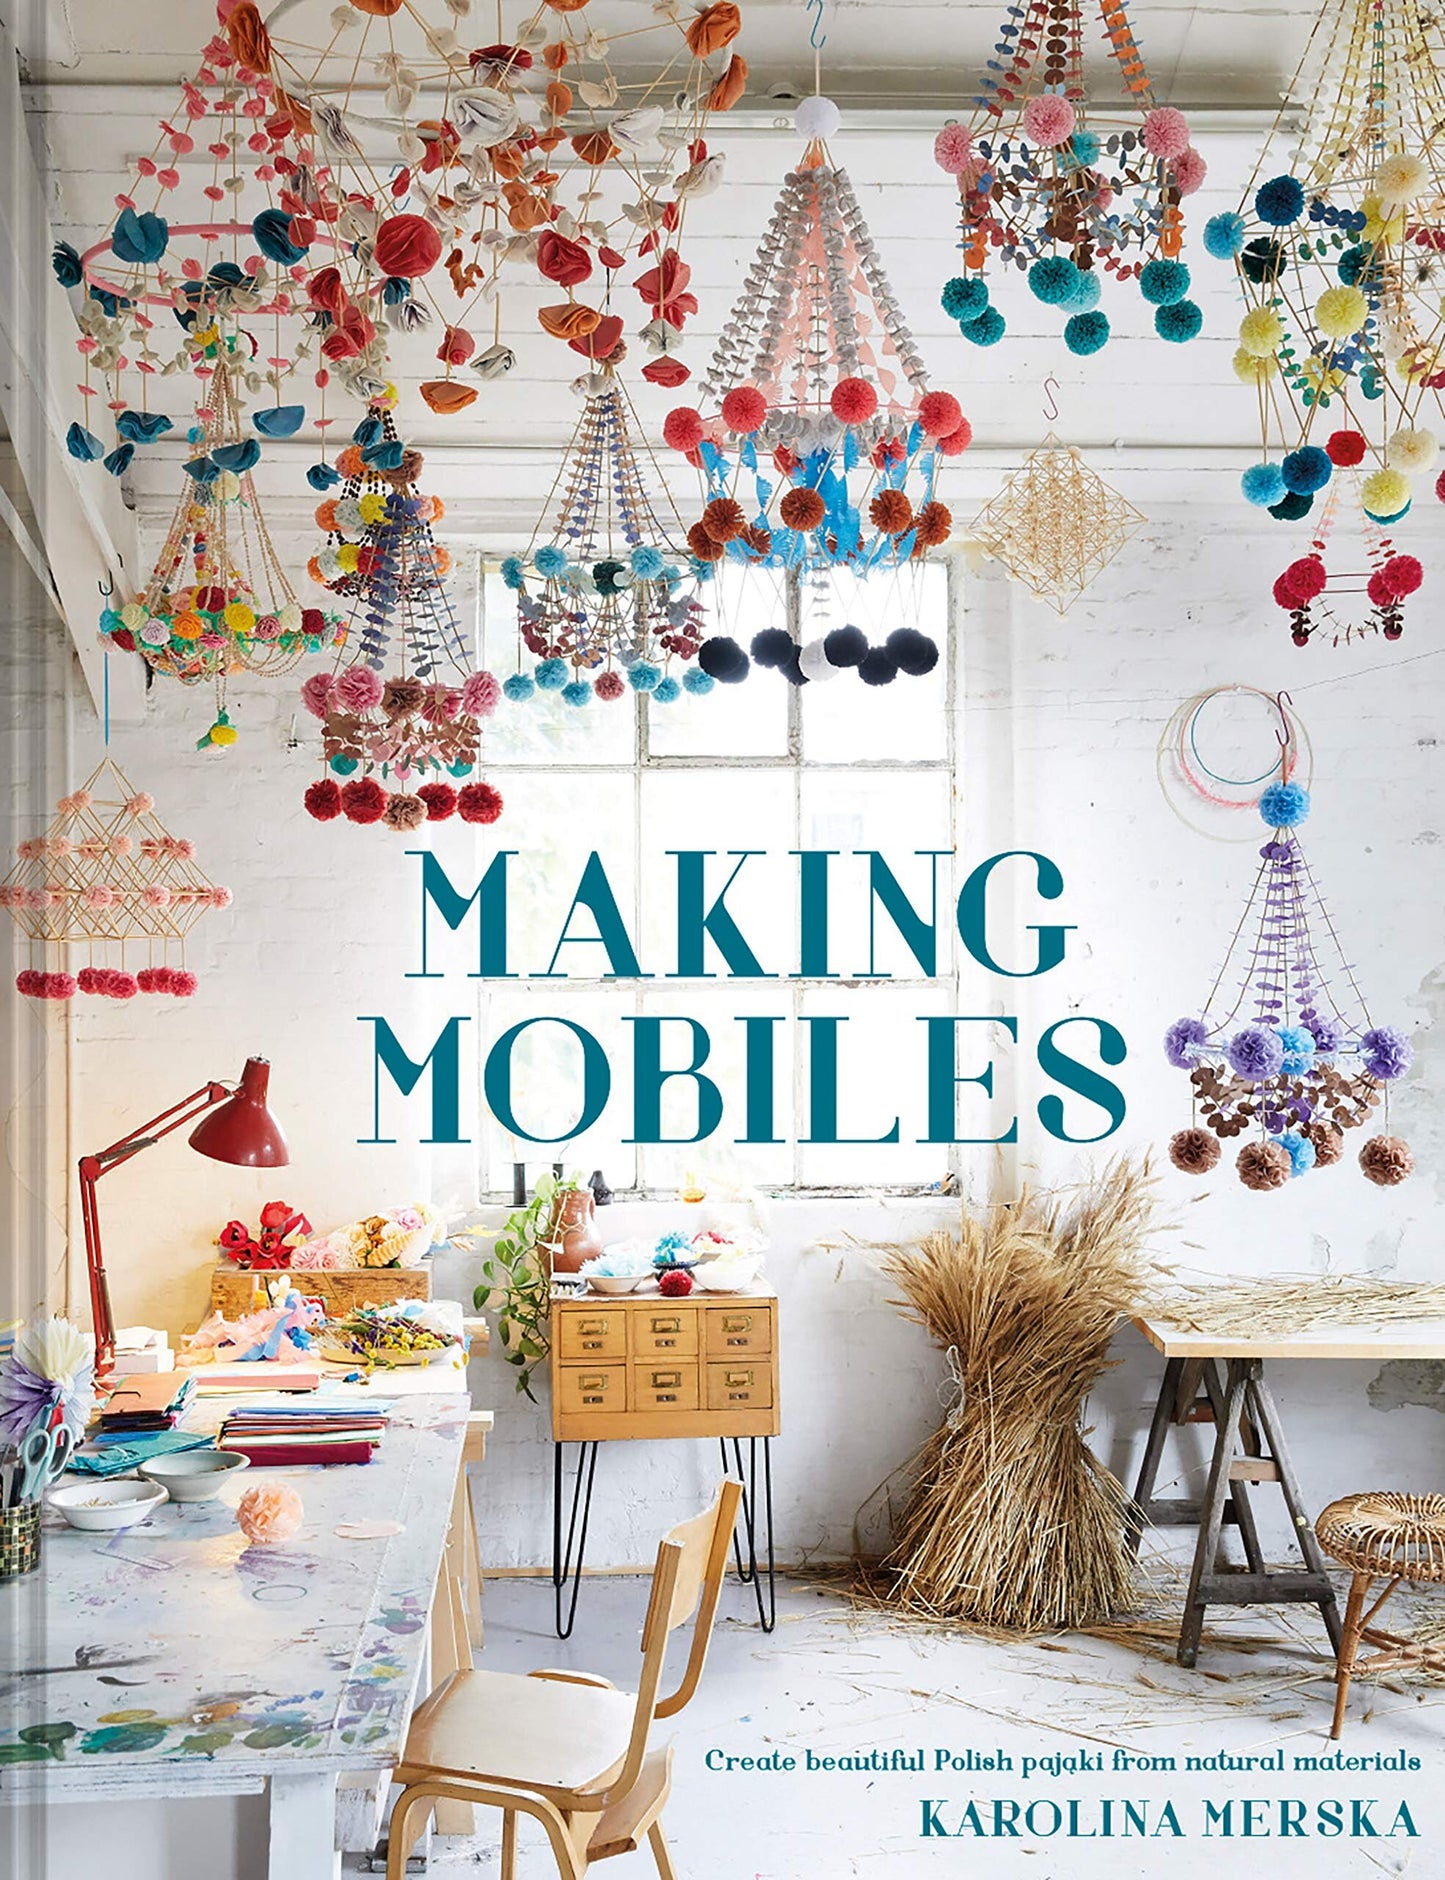 Making Mobiles. Create Beautiful Polish Pajaki from Natural Materials by Karolina Merska. Signed copy.